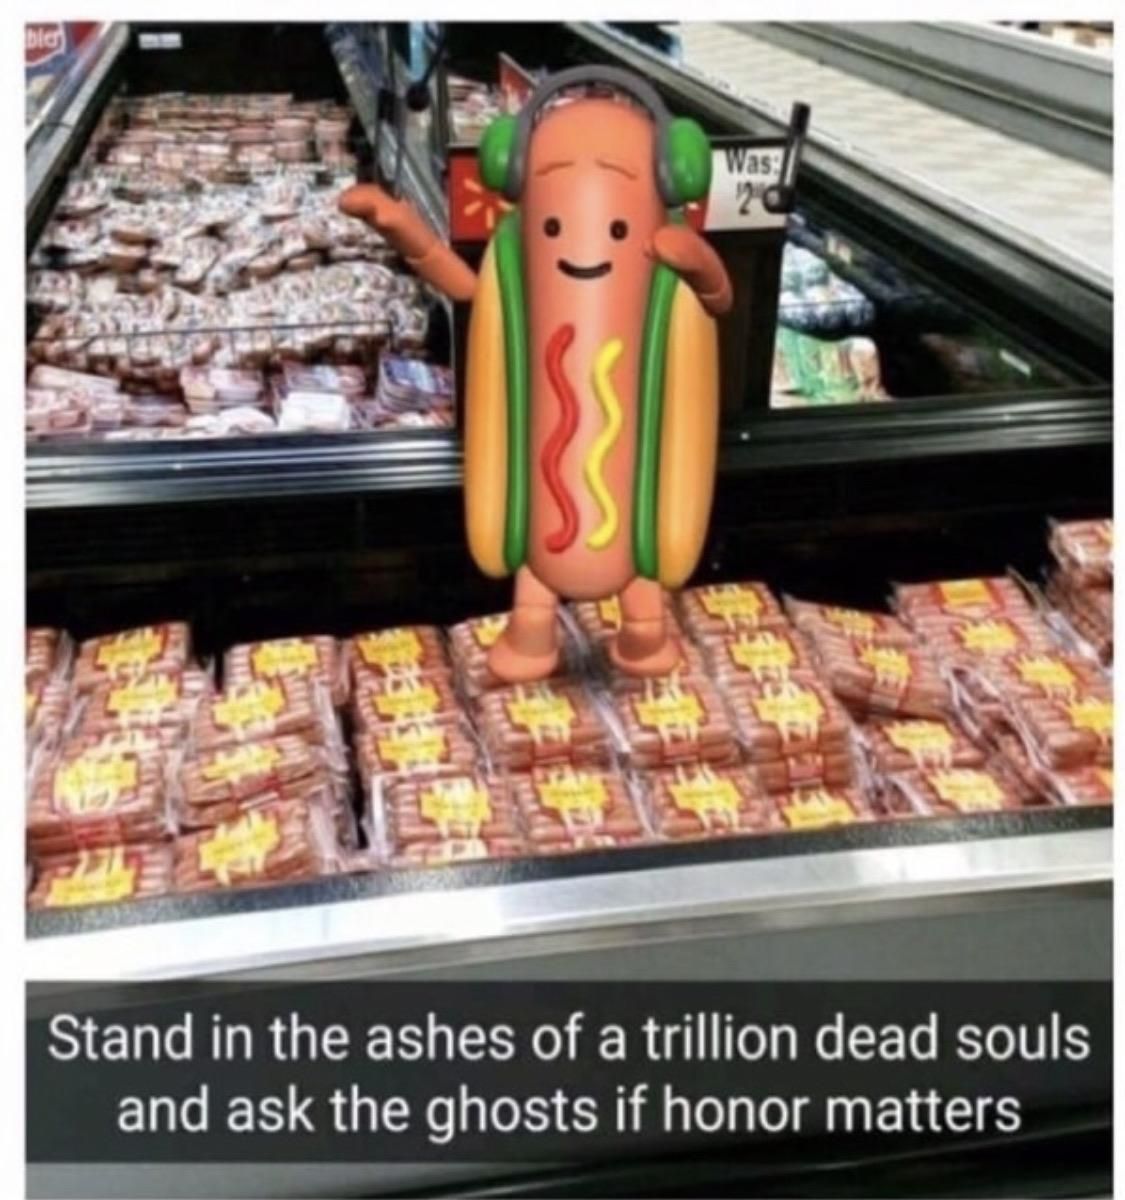 Hotdog, in memoriam